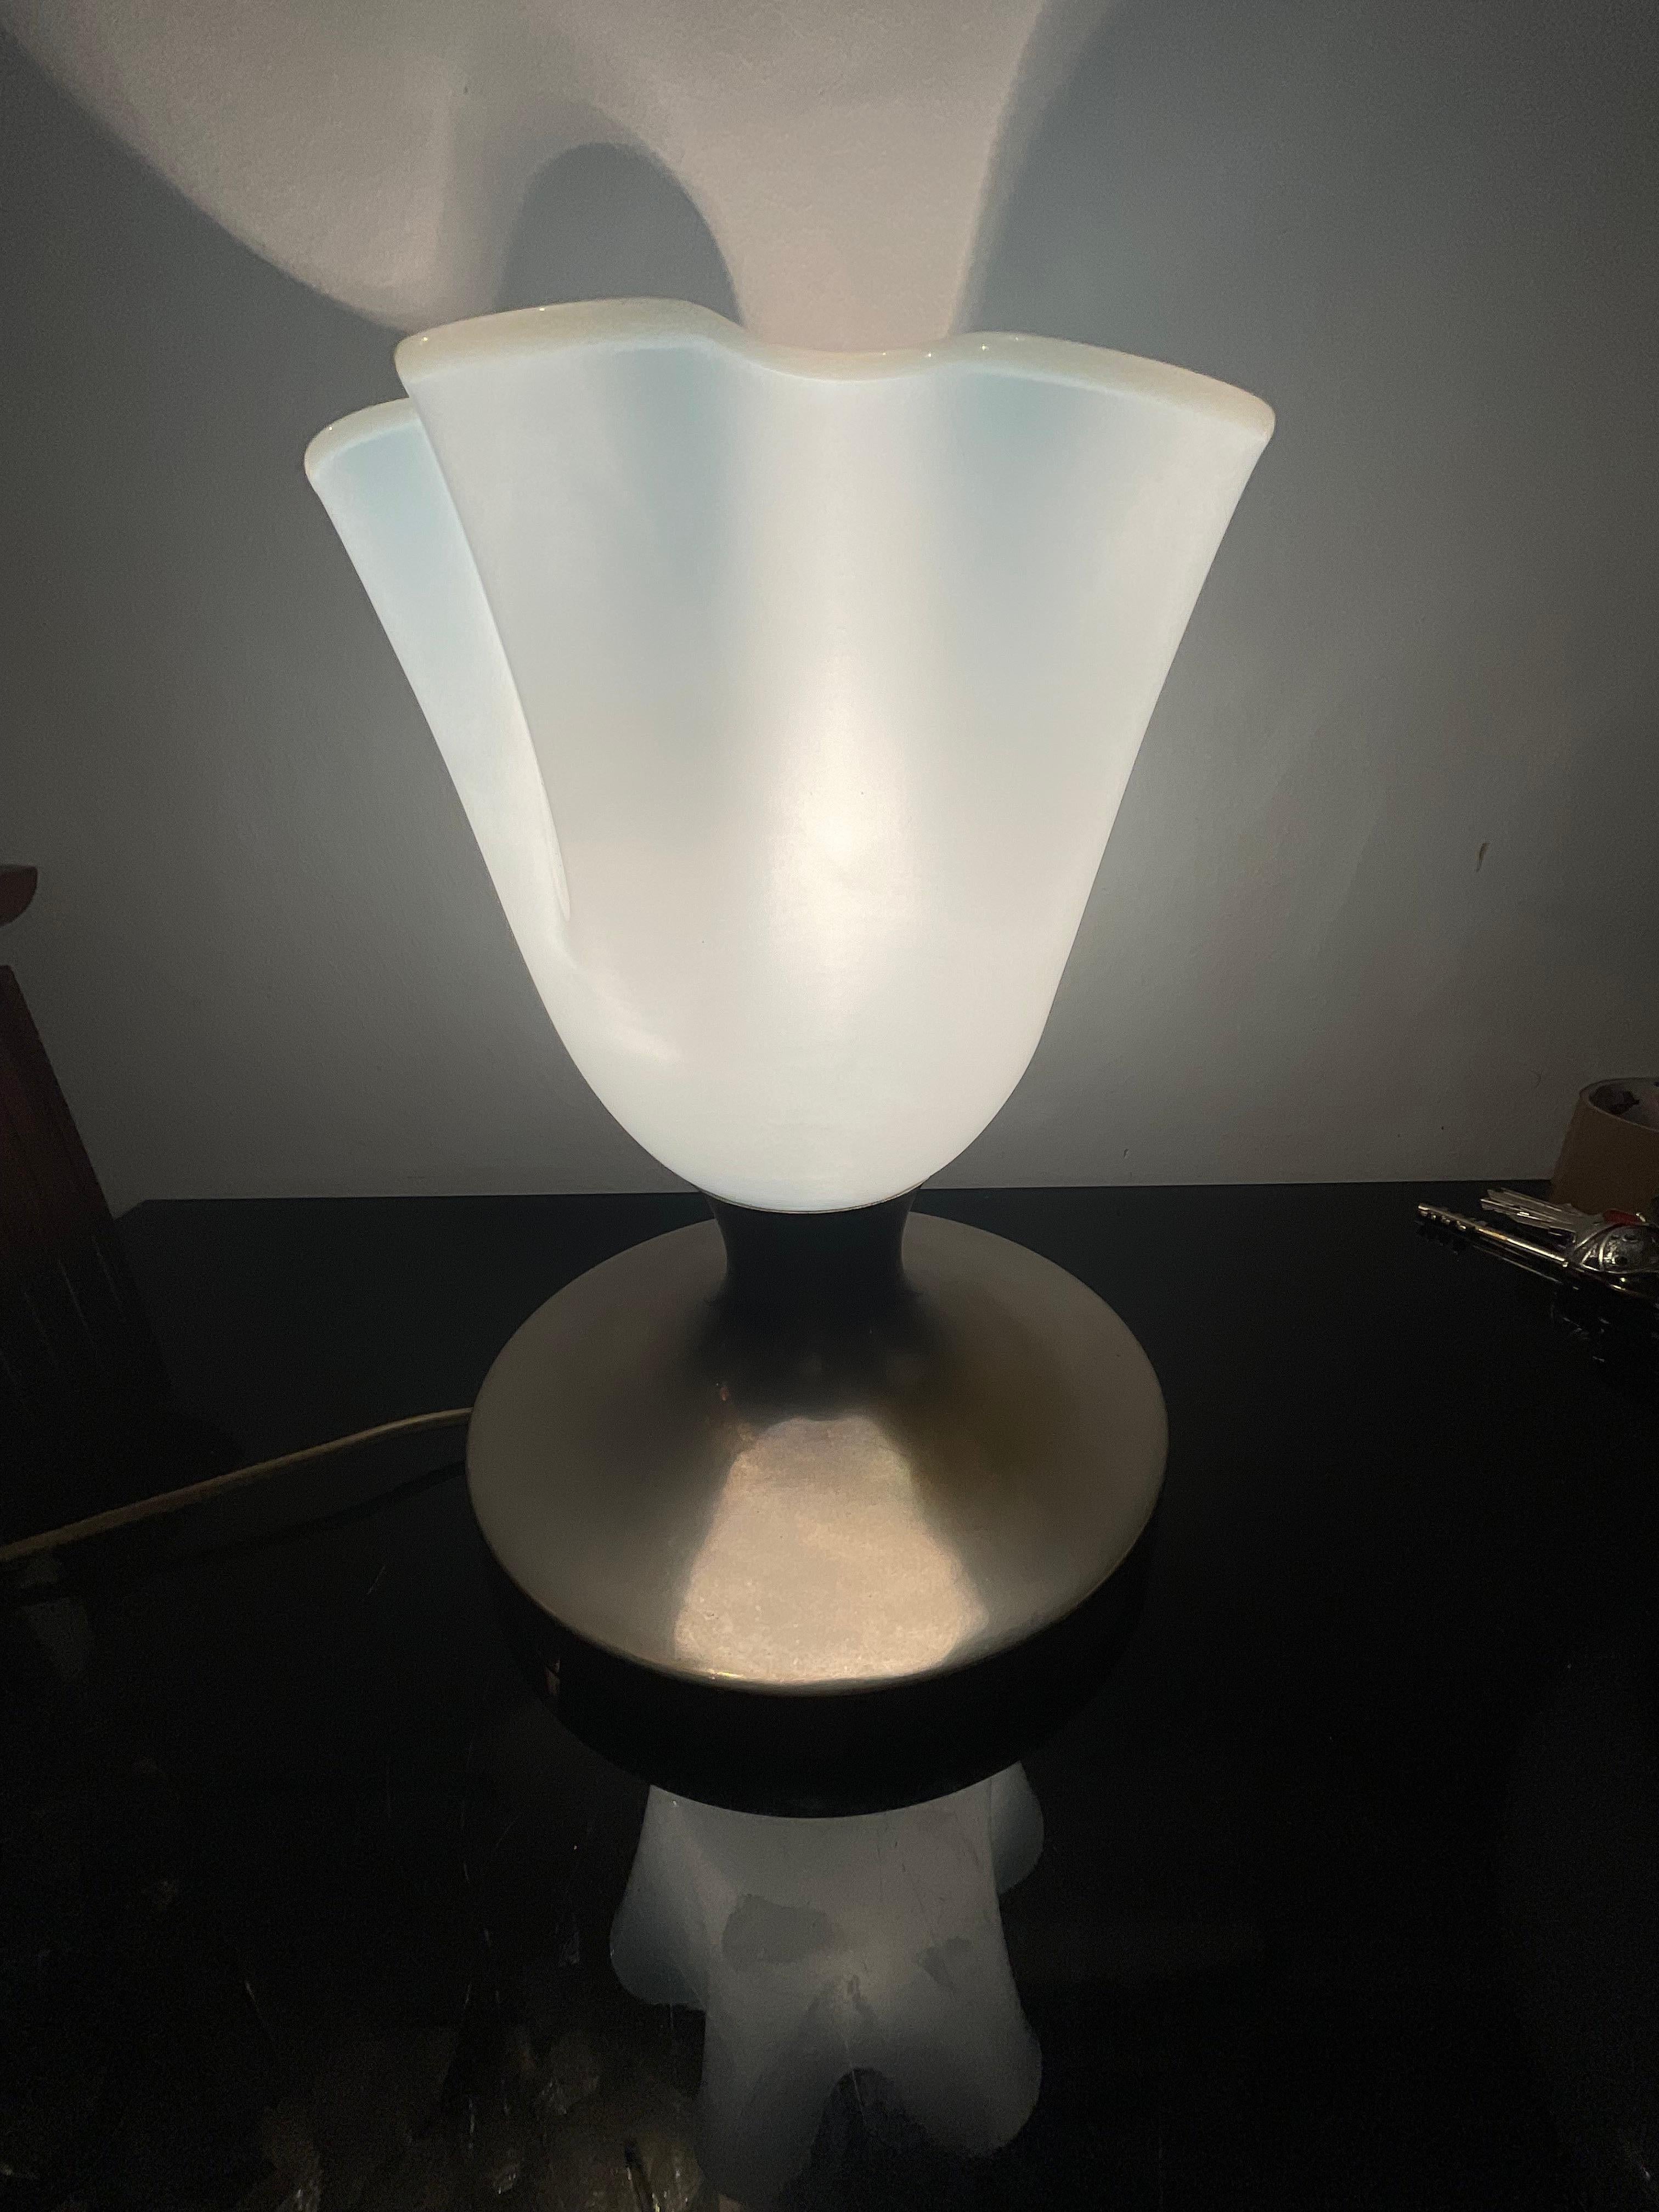 Rara lampada da tavolo anni 50, attribuita a VENINI probabilmente disegnata da Fulvio bianconi e Paolo Venini, negli anni 40.
Il fazzoletto in vetro di murano e colore azzurro tenue con il bordo più chiaro , la base e in ottone cromato.
La lampada è